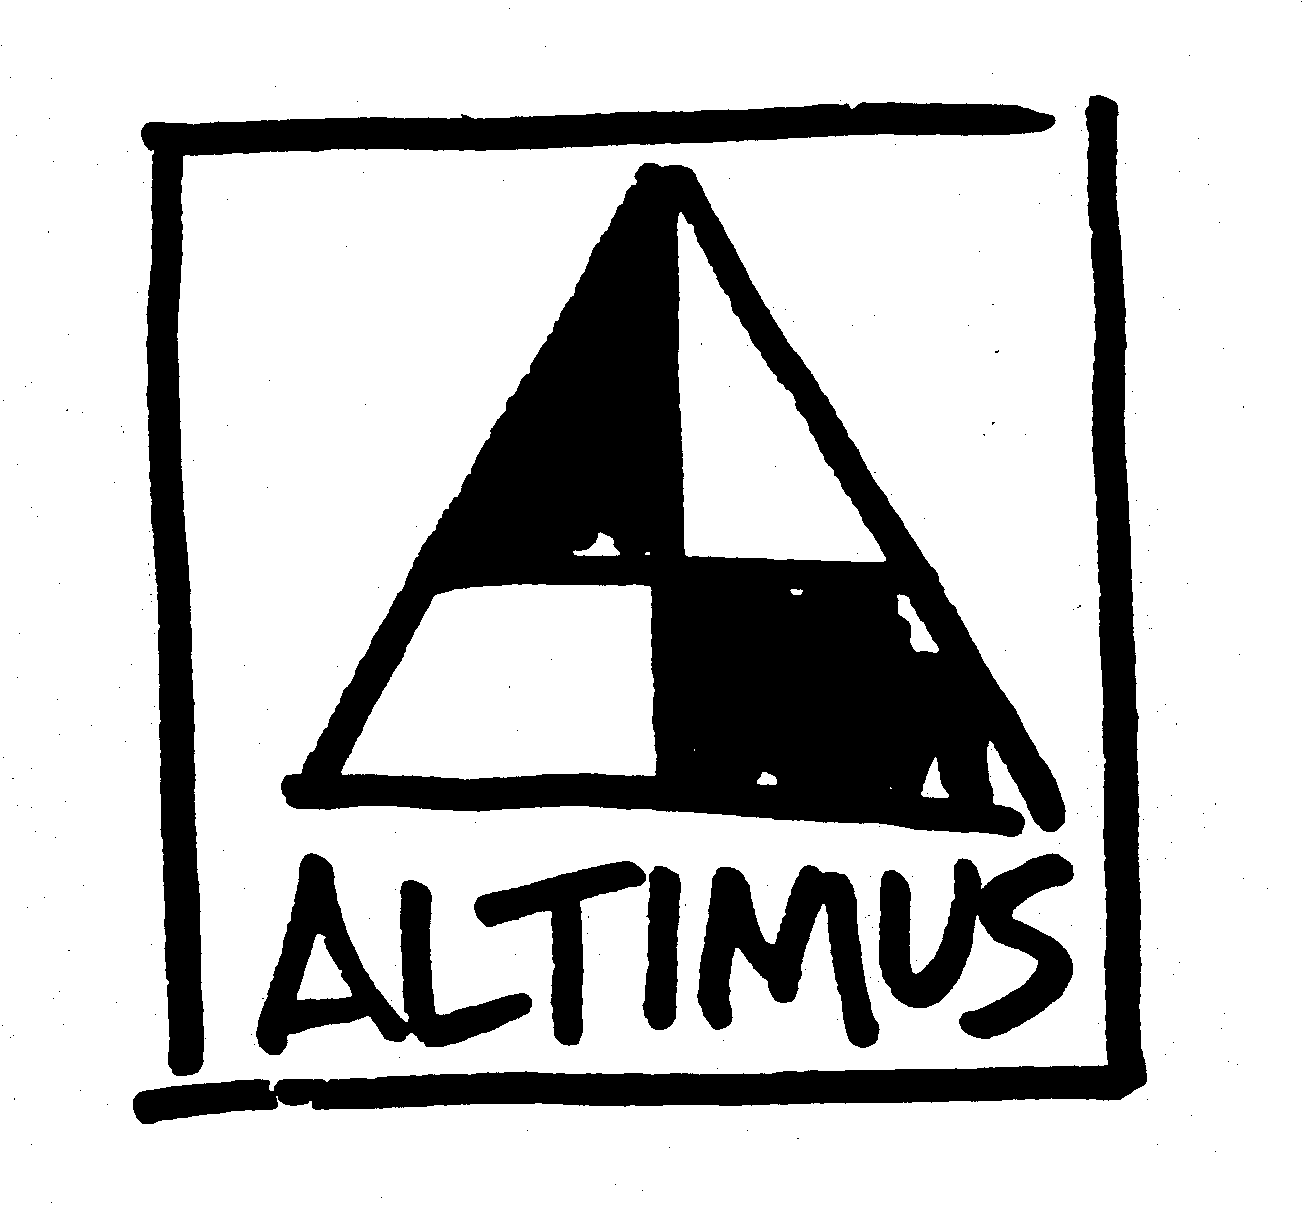 ALTIMUS